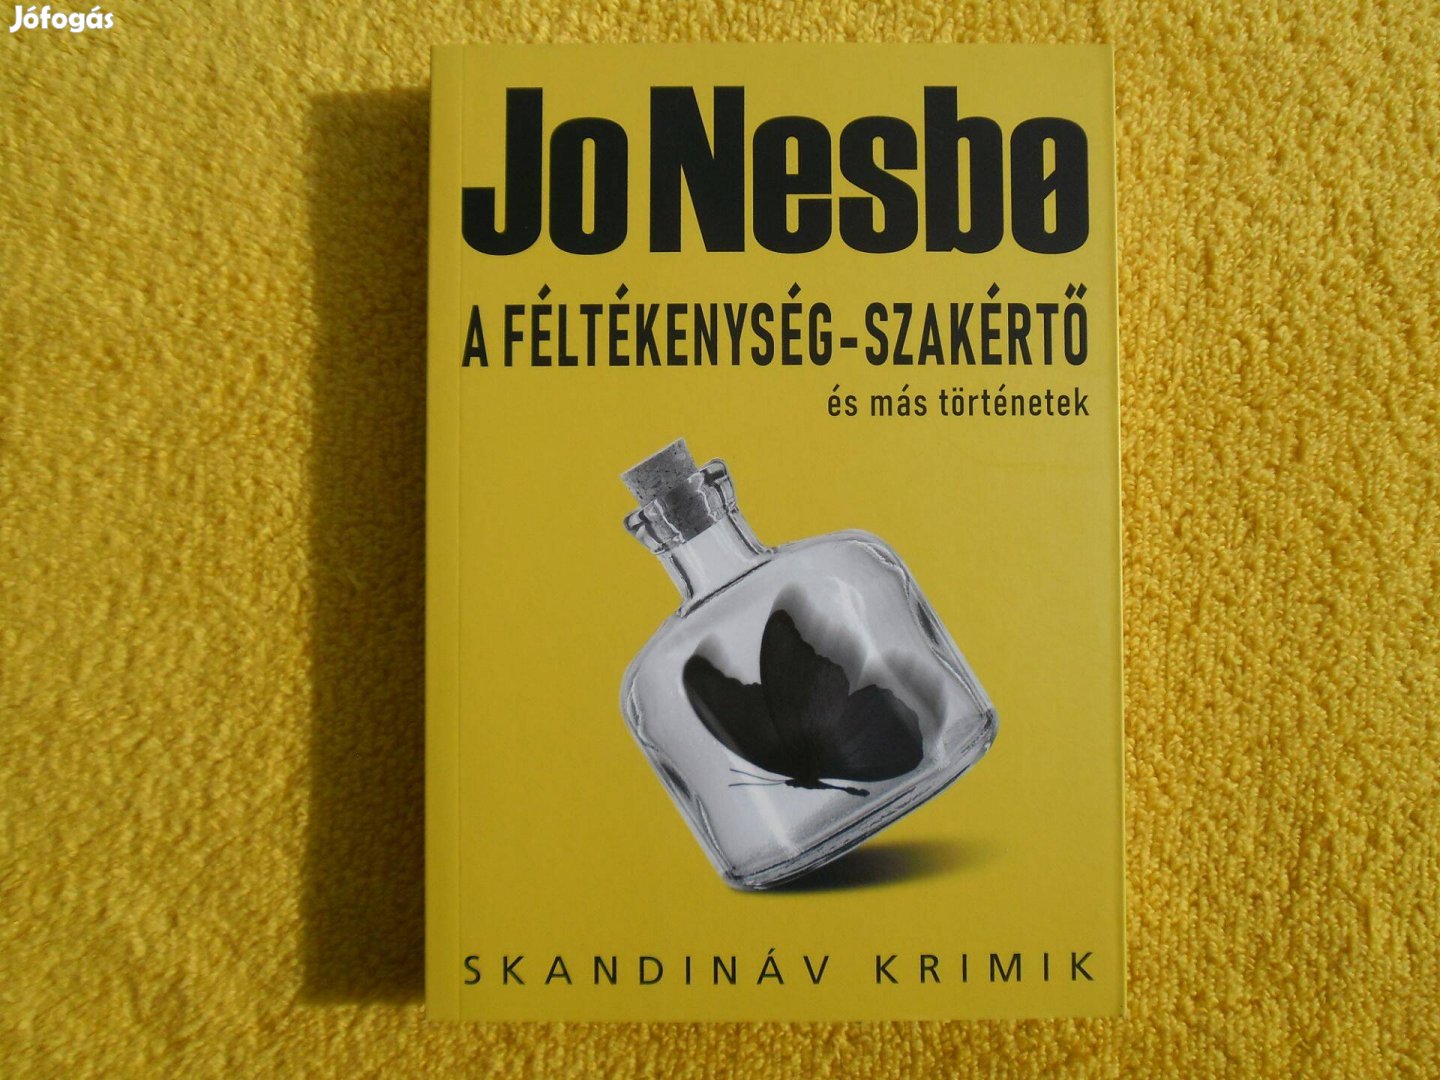 Jo Nesbo: A féltékenység-szakértő /Skandináv krimik/